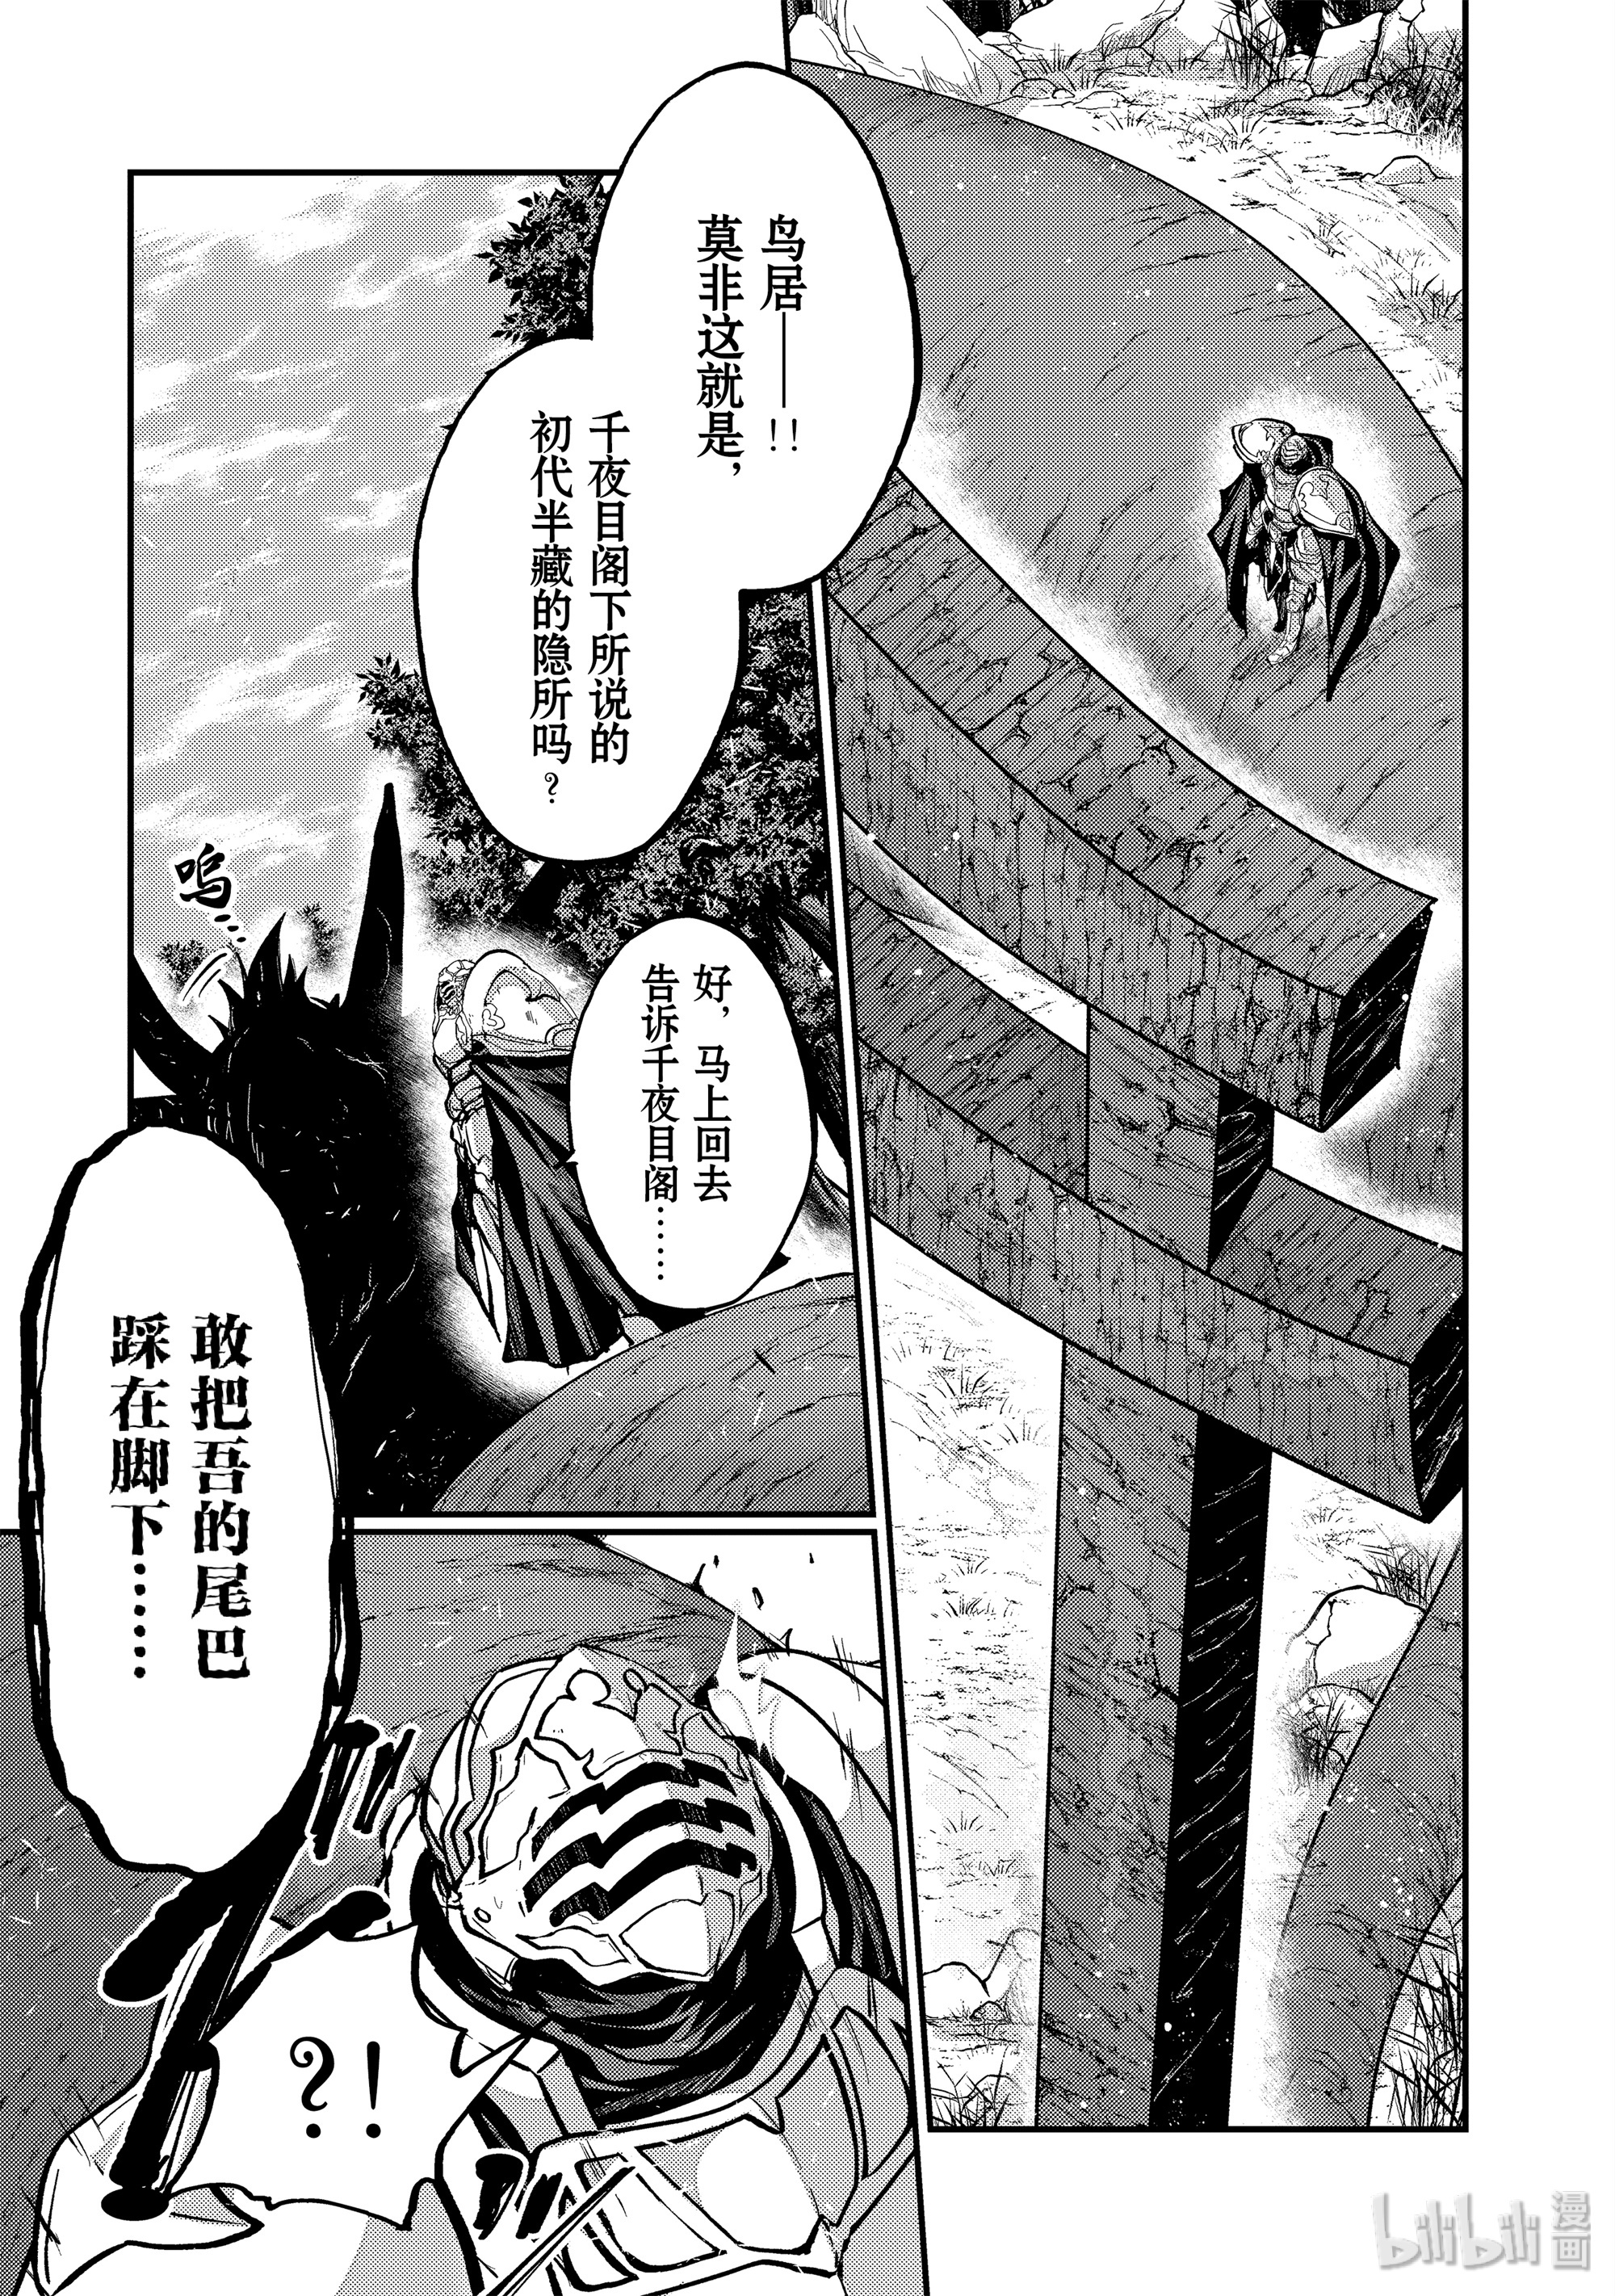 《骸骨骑士大人异世界冒险中》23 泉与诅咒Ⅰ第1页